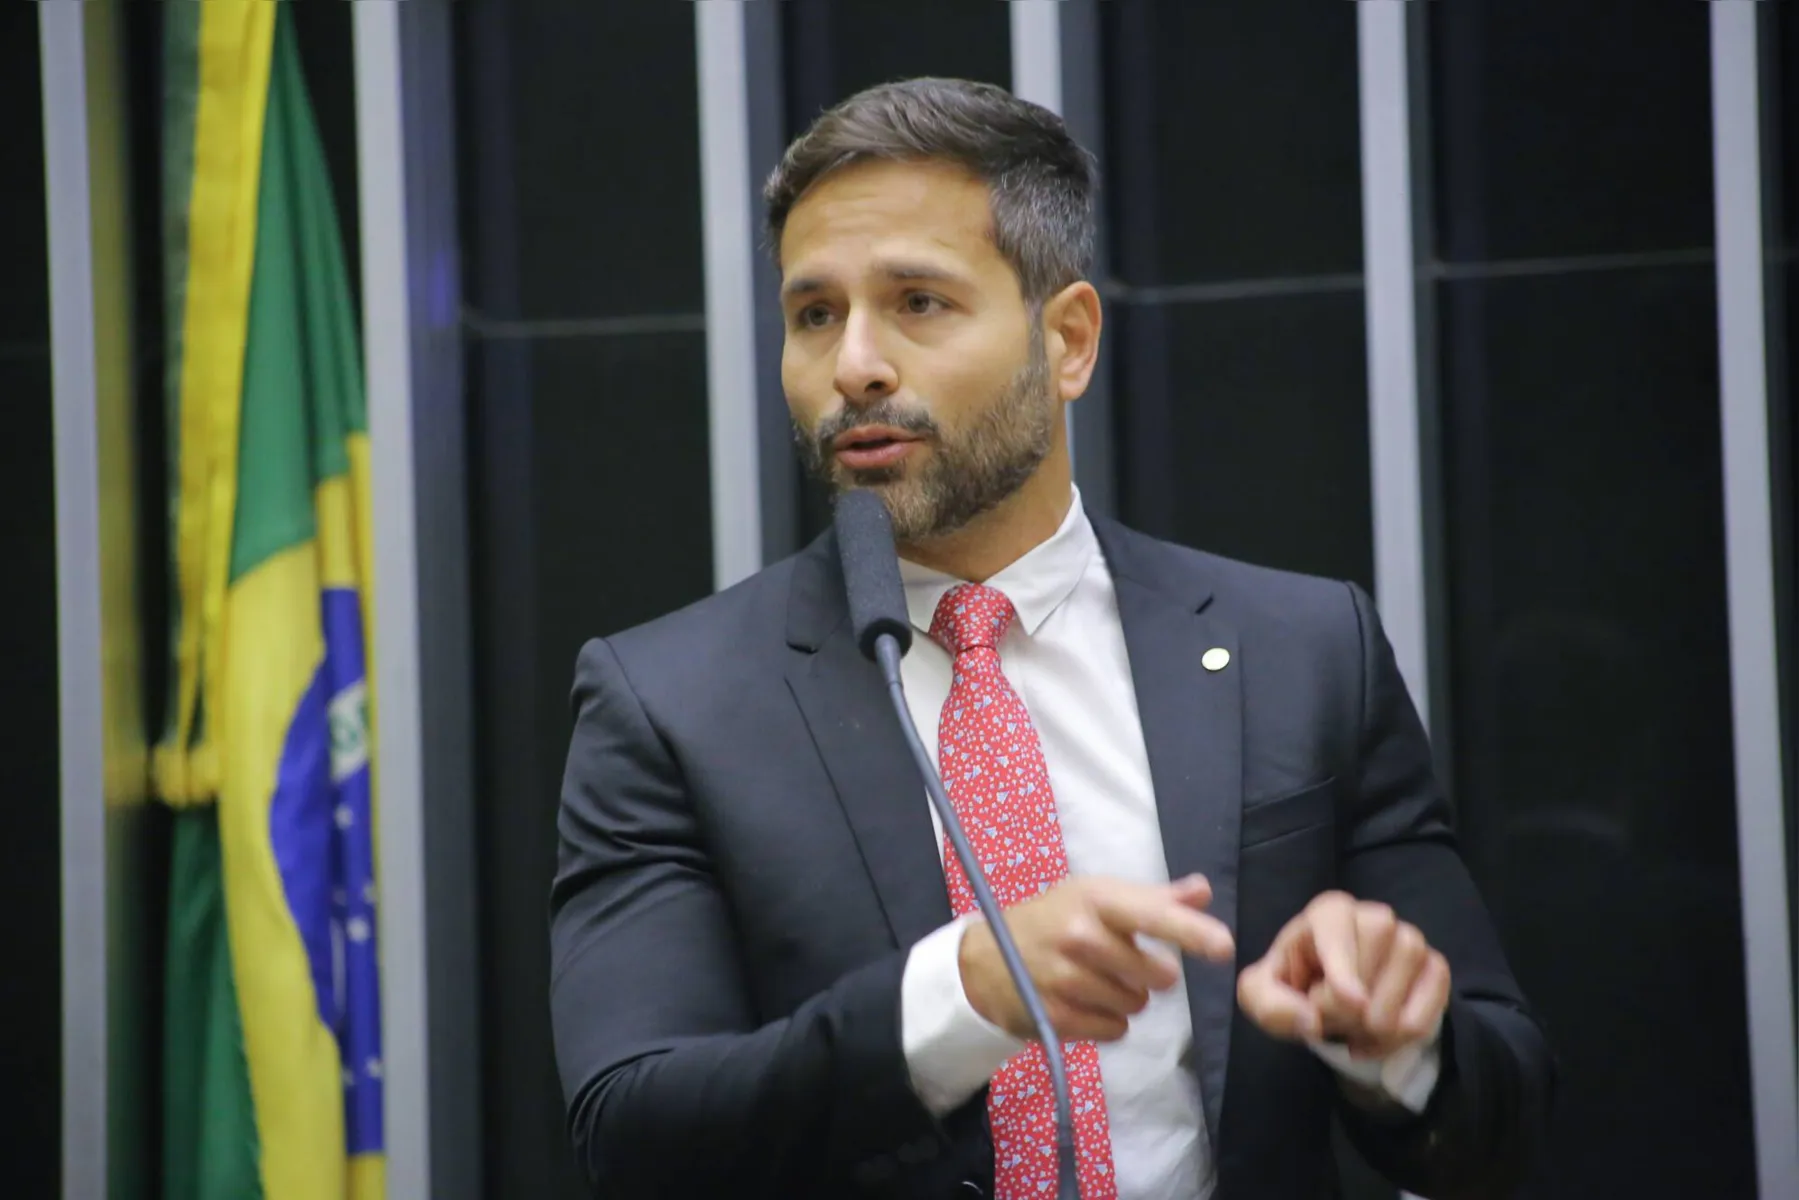 Marcelo Calero, deputado pelo PSD/ RJ, pediu explicações ao governo sobre o que teria levado o Ministério da Cidadania a dar a medalha a alguém sem nenhuma ligação com a literatura